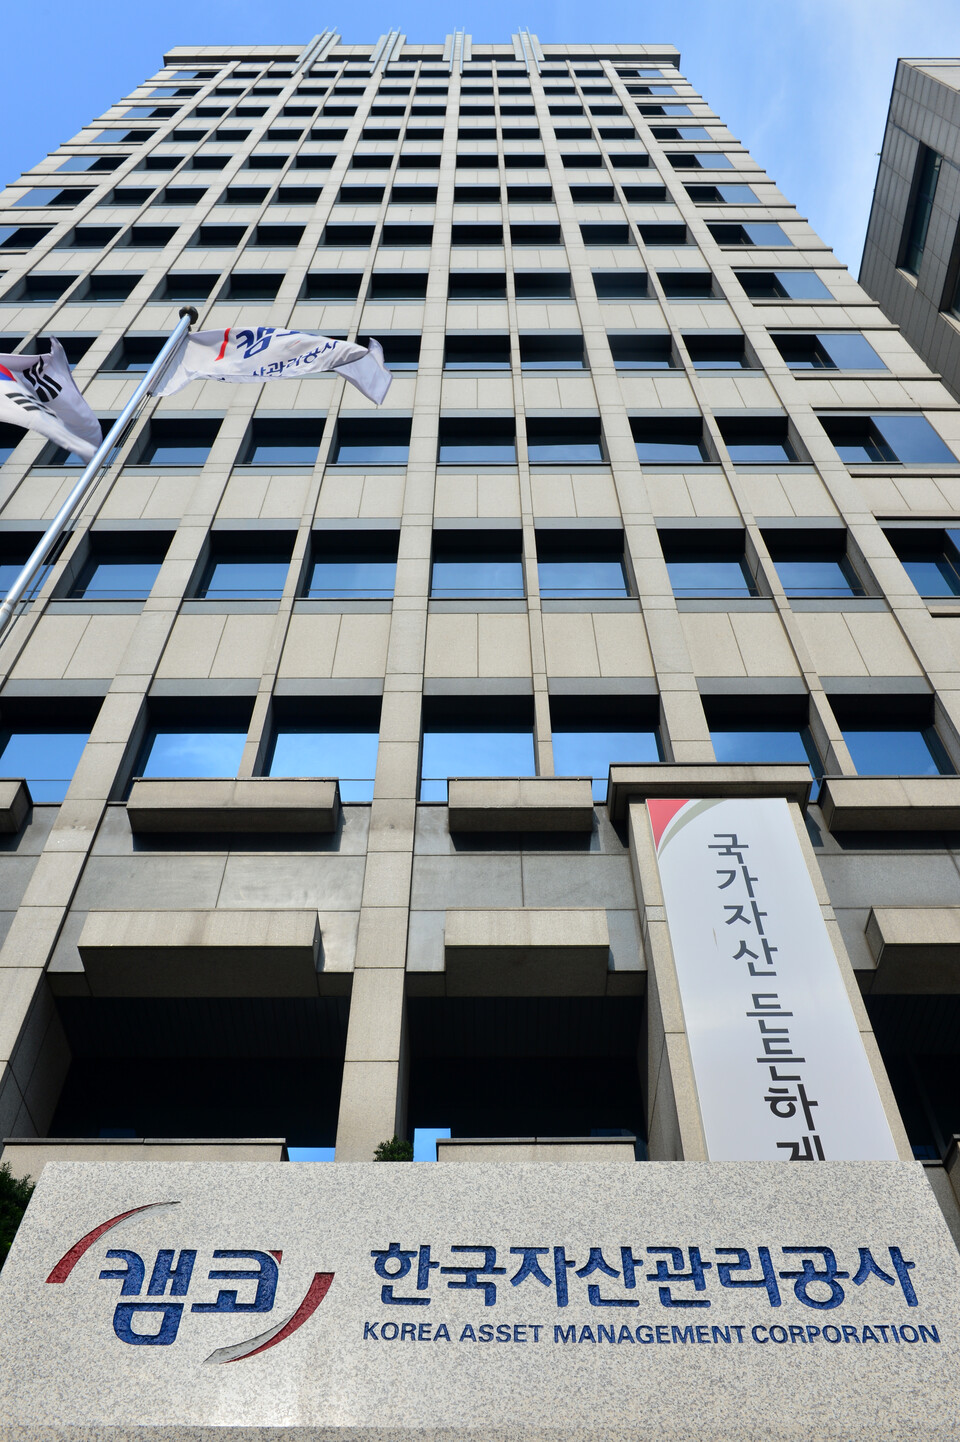 한국자산관리공사는 14일 최근 이랜드리테일과 한신공영 등 2개 기업의 담보부사채 발행에 총 800억원 규모의 지급보증을 지원했다고 밝혔다. [사진=뉴시스]